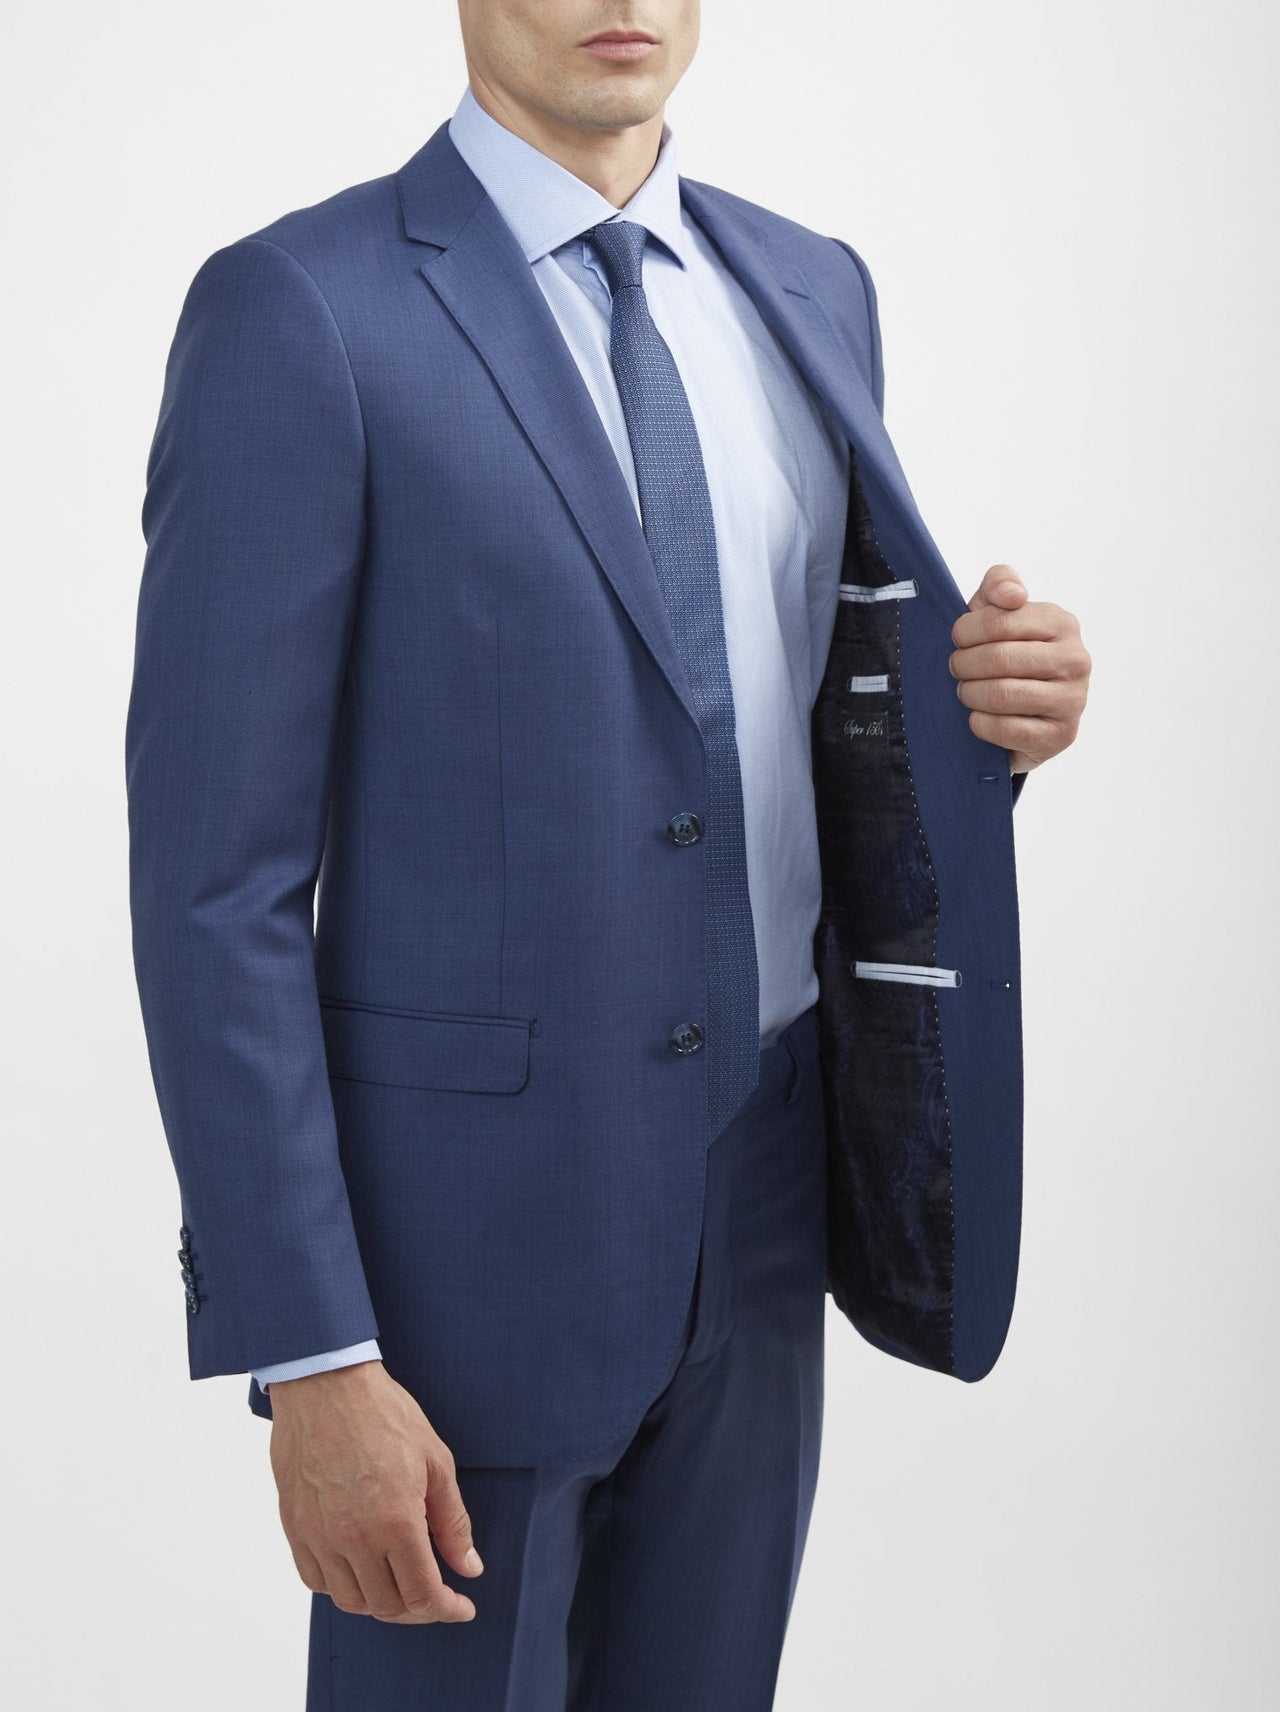 Royal Blue Suit  Buy A Royal Blue Suit For Men at Tomasso Black